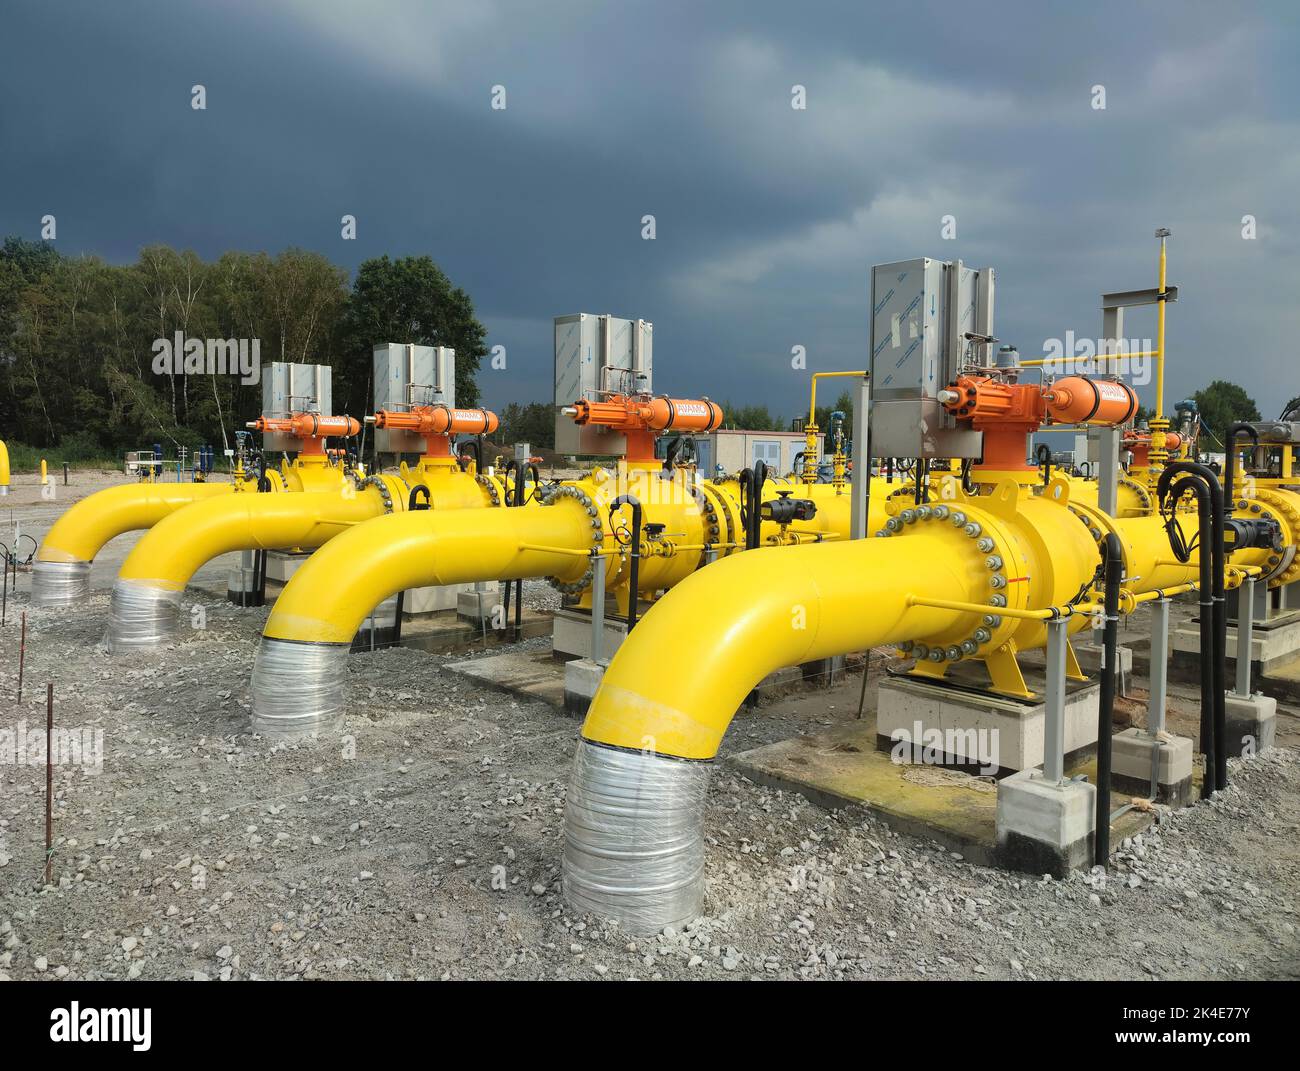 Ploty, Polonia - 02 de octubre de 2022. Baltic Pipe.Terminal de construcción de la estación de compresor del nuevo gasoducto de gas natural entre el Mar del Norte de Noruega Foto de stock